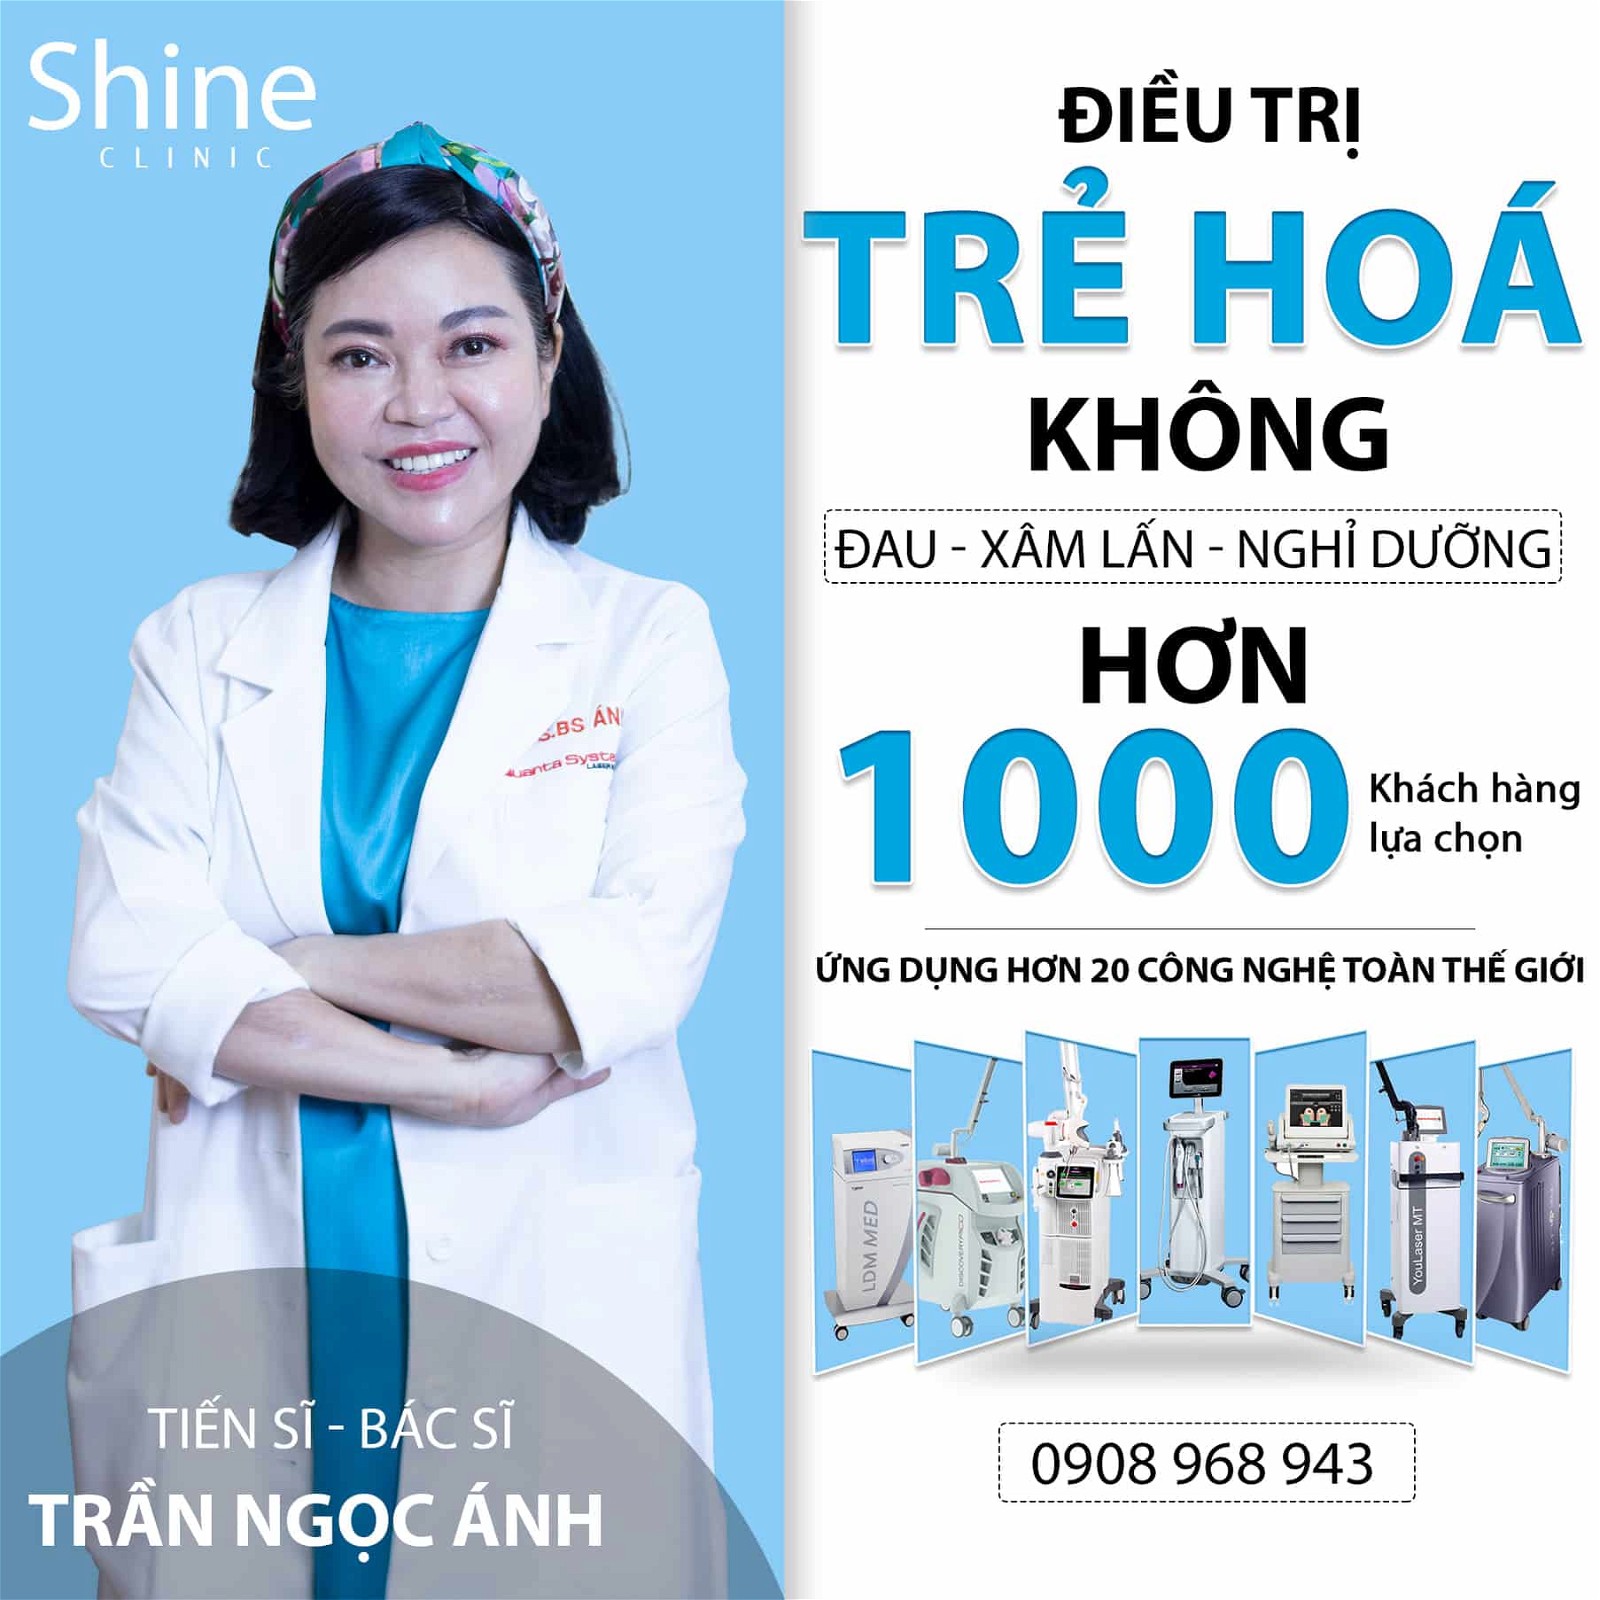 Shine Clinic dưới sự dẫn dắt của TS. BS Trần Ngọc Ánh với gần 40 năm kinh nghiệm điều trị cho hàng triệu bệnh nhân. 